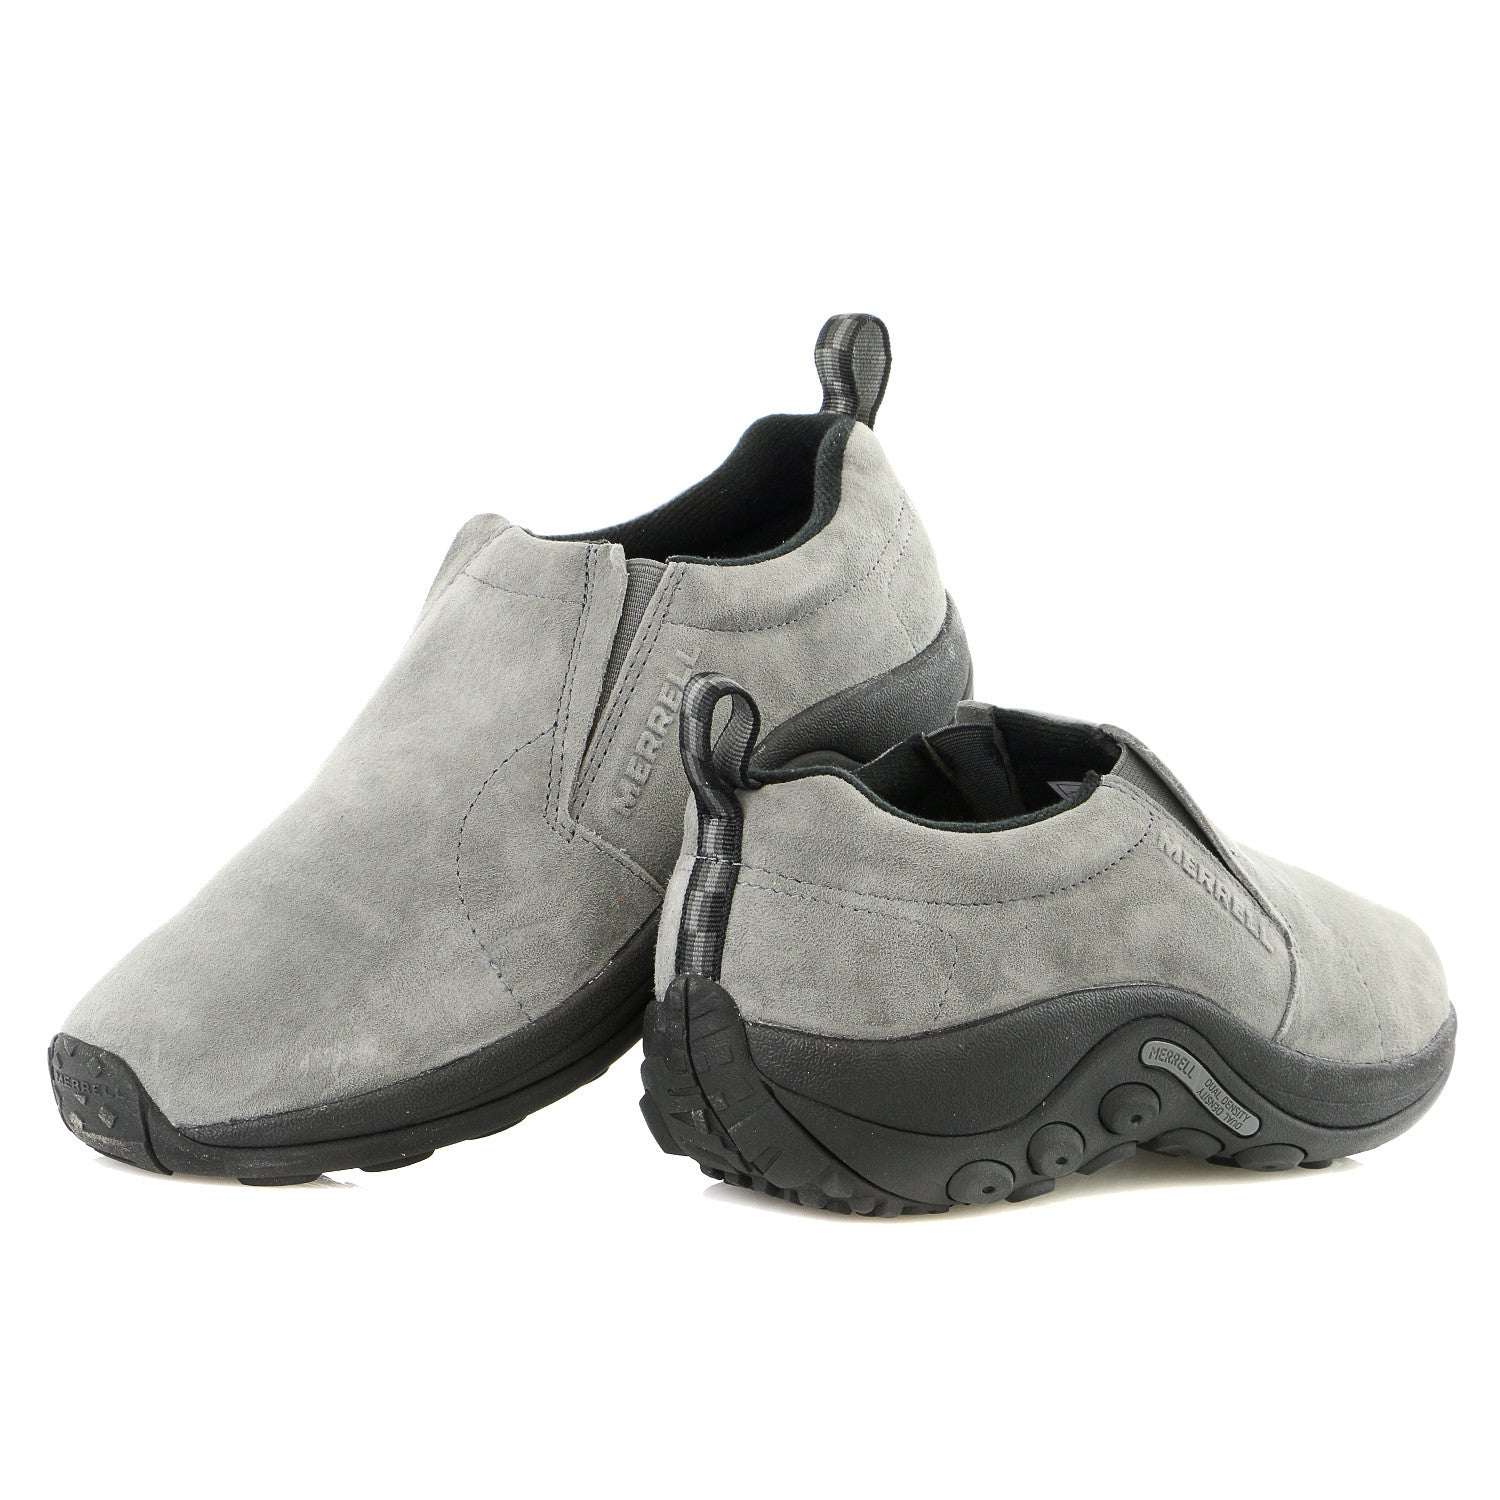 Merrell Jungle Moc Leather Slip-On Loafer Sneaker Shoe - Mens ...